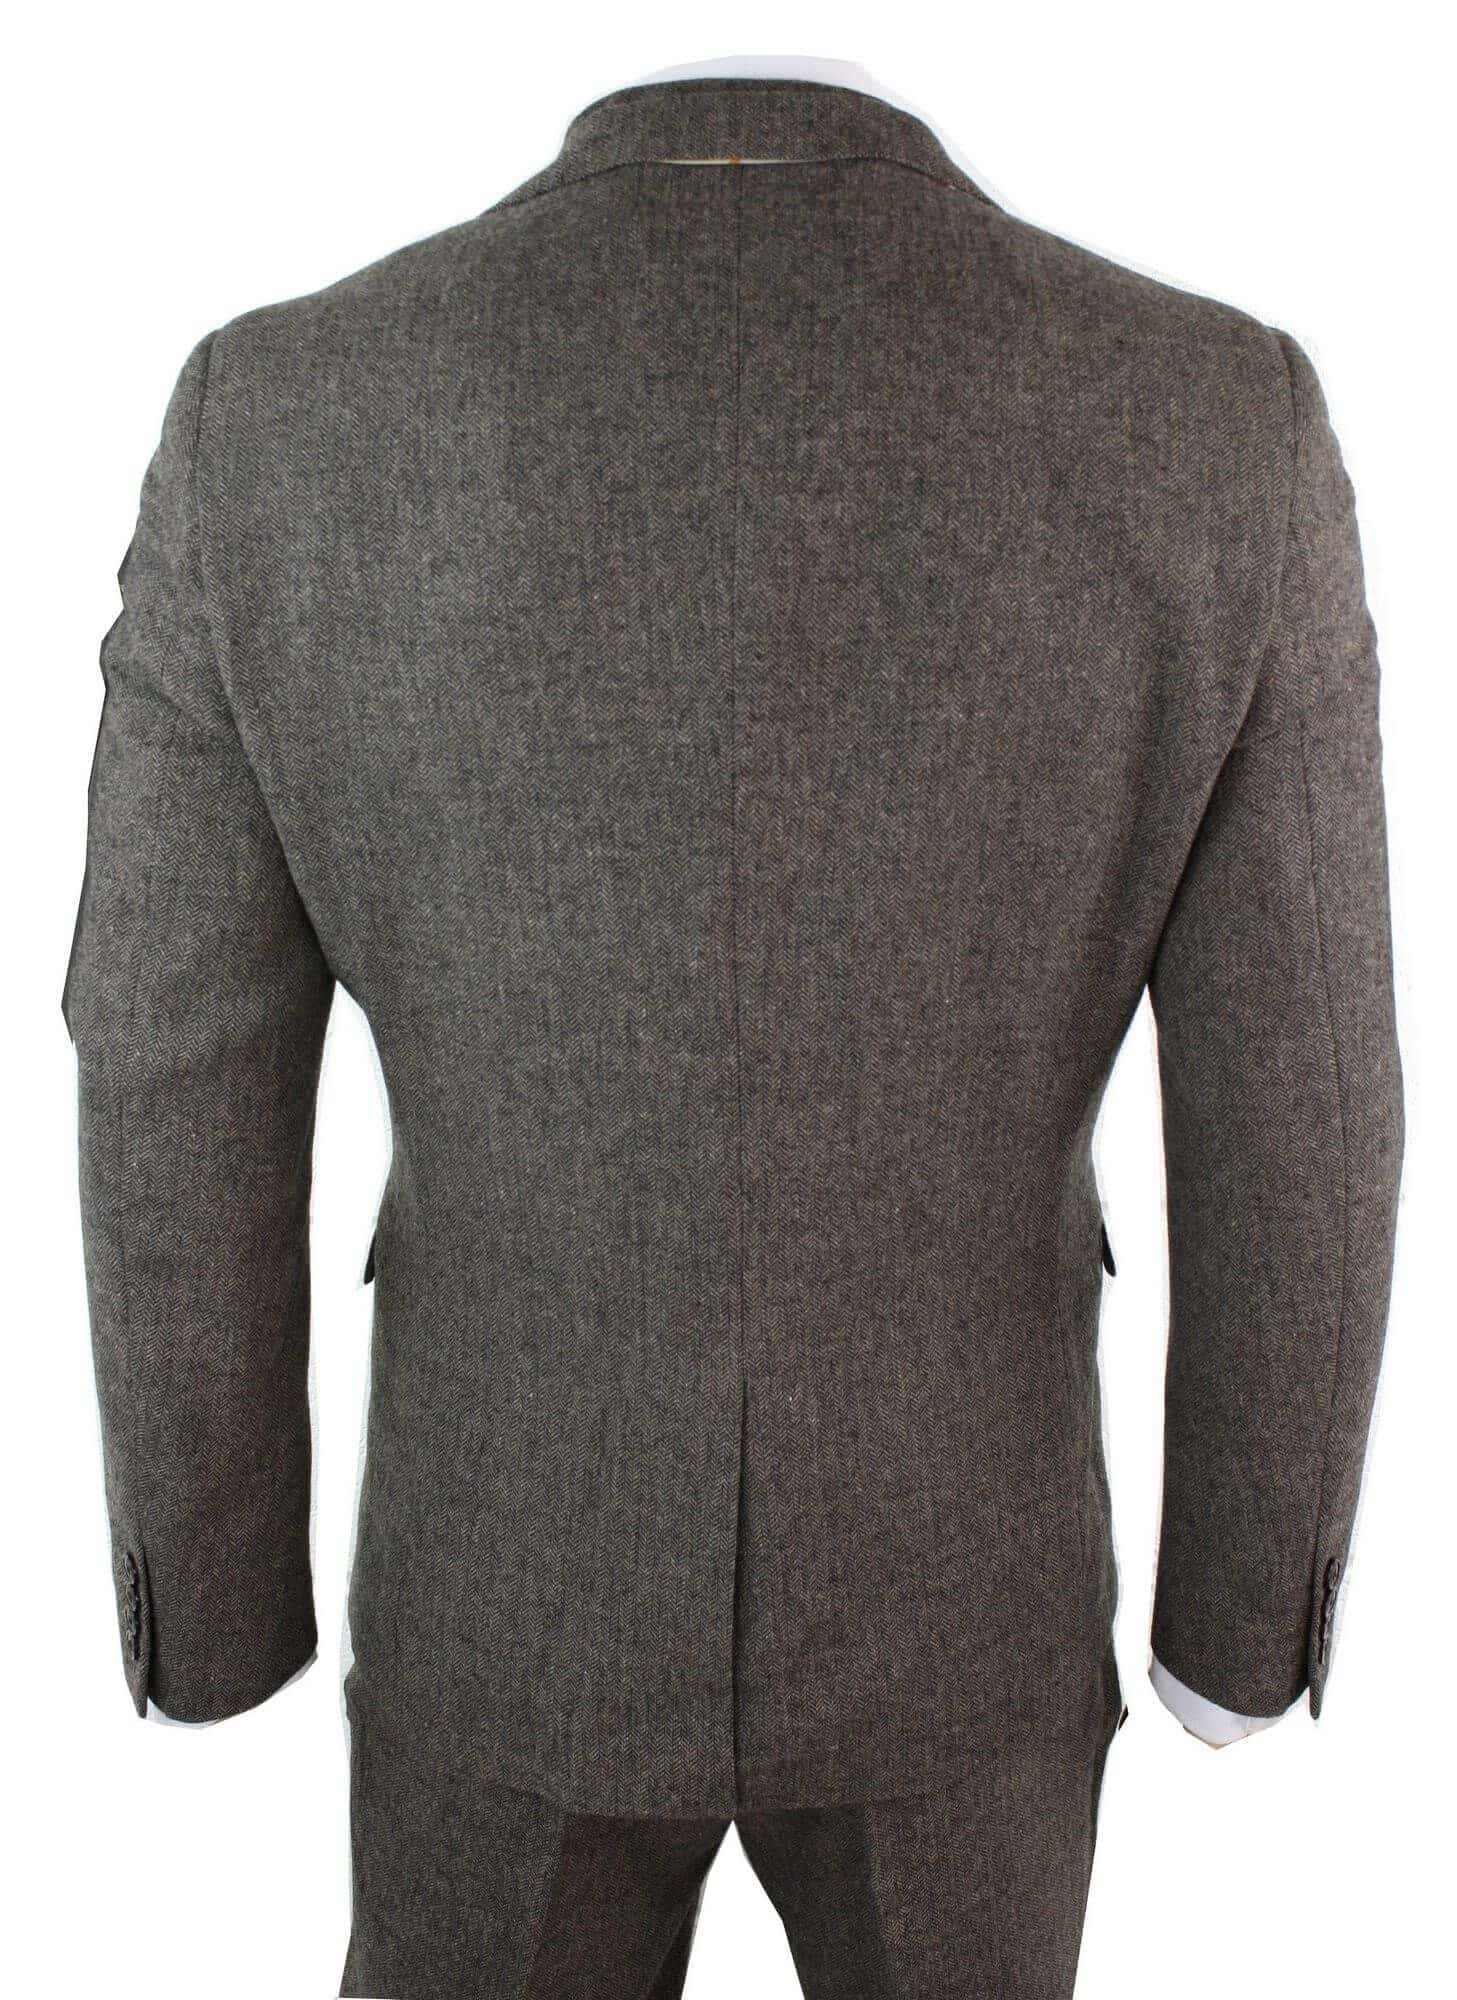 Mens Navy Wool Mix 3 Piece Suit Vintage Herringbone Tweed Smart Tailored Fit UK 